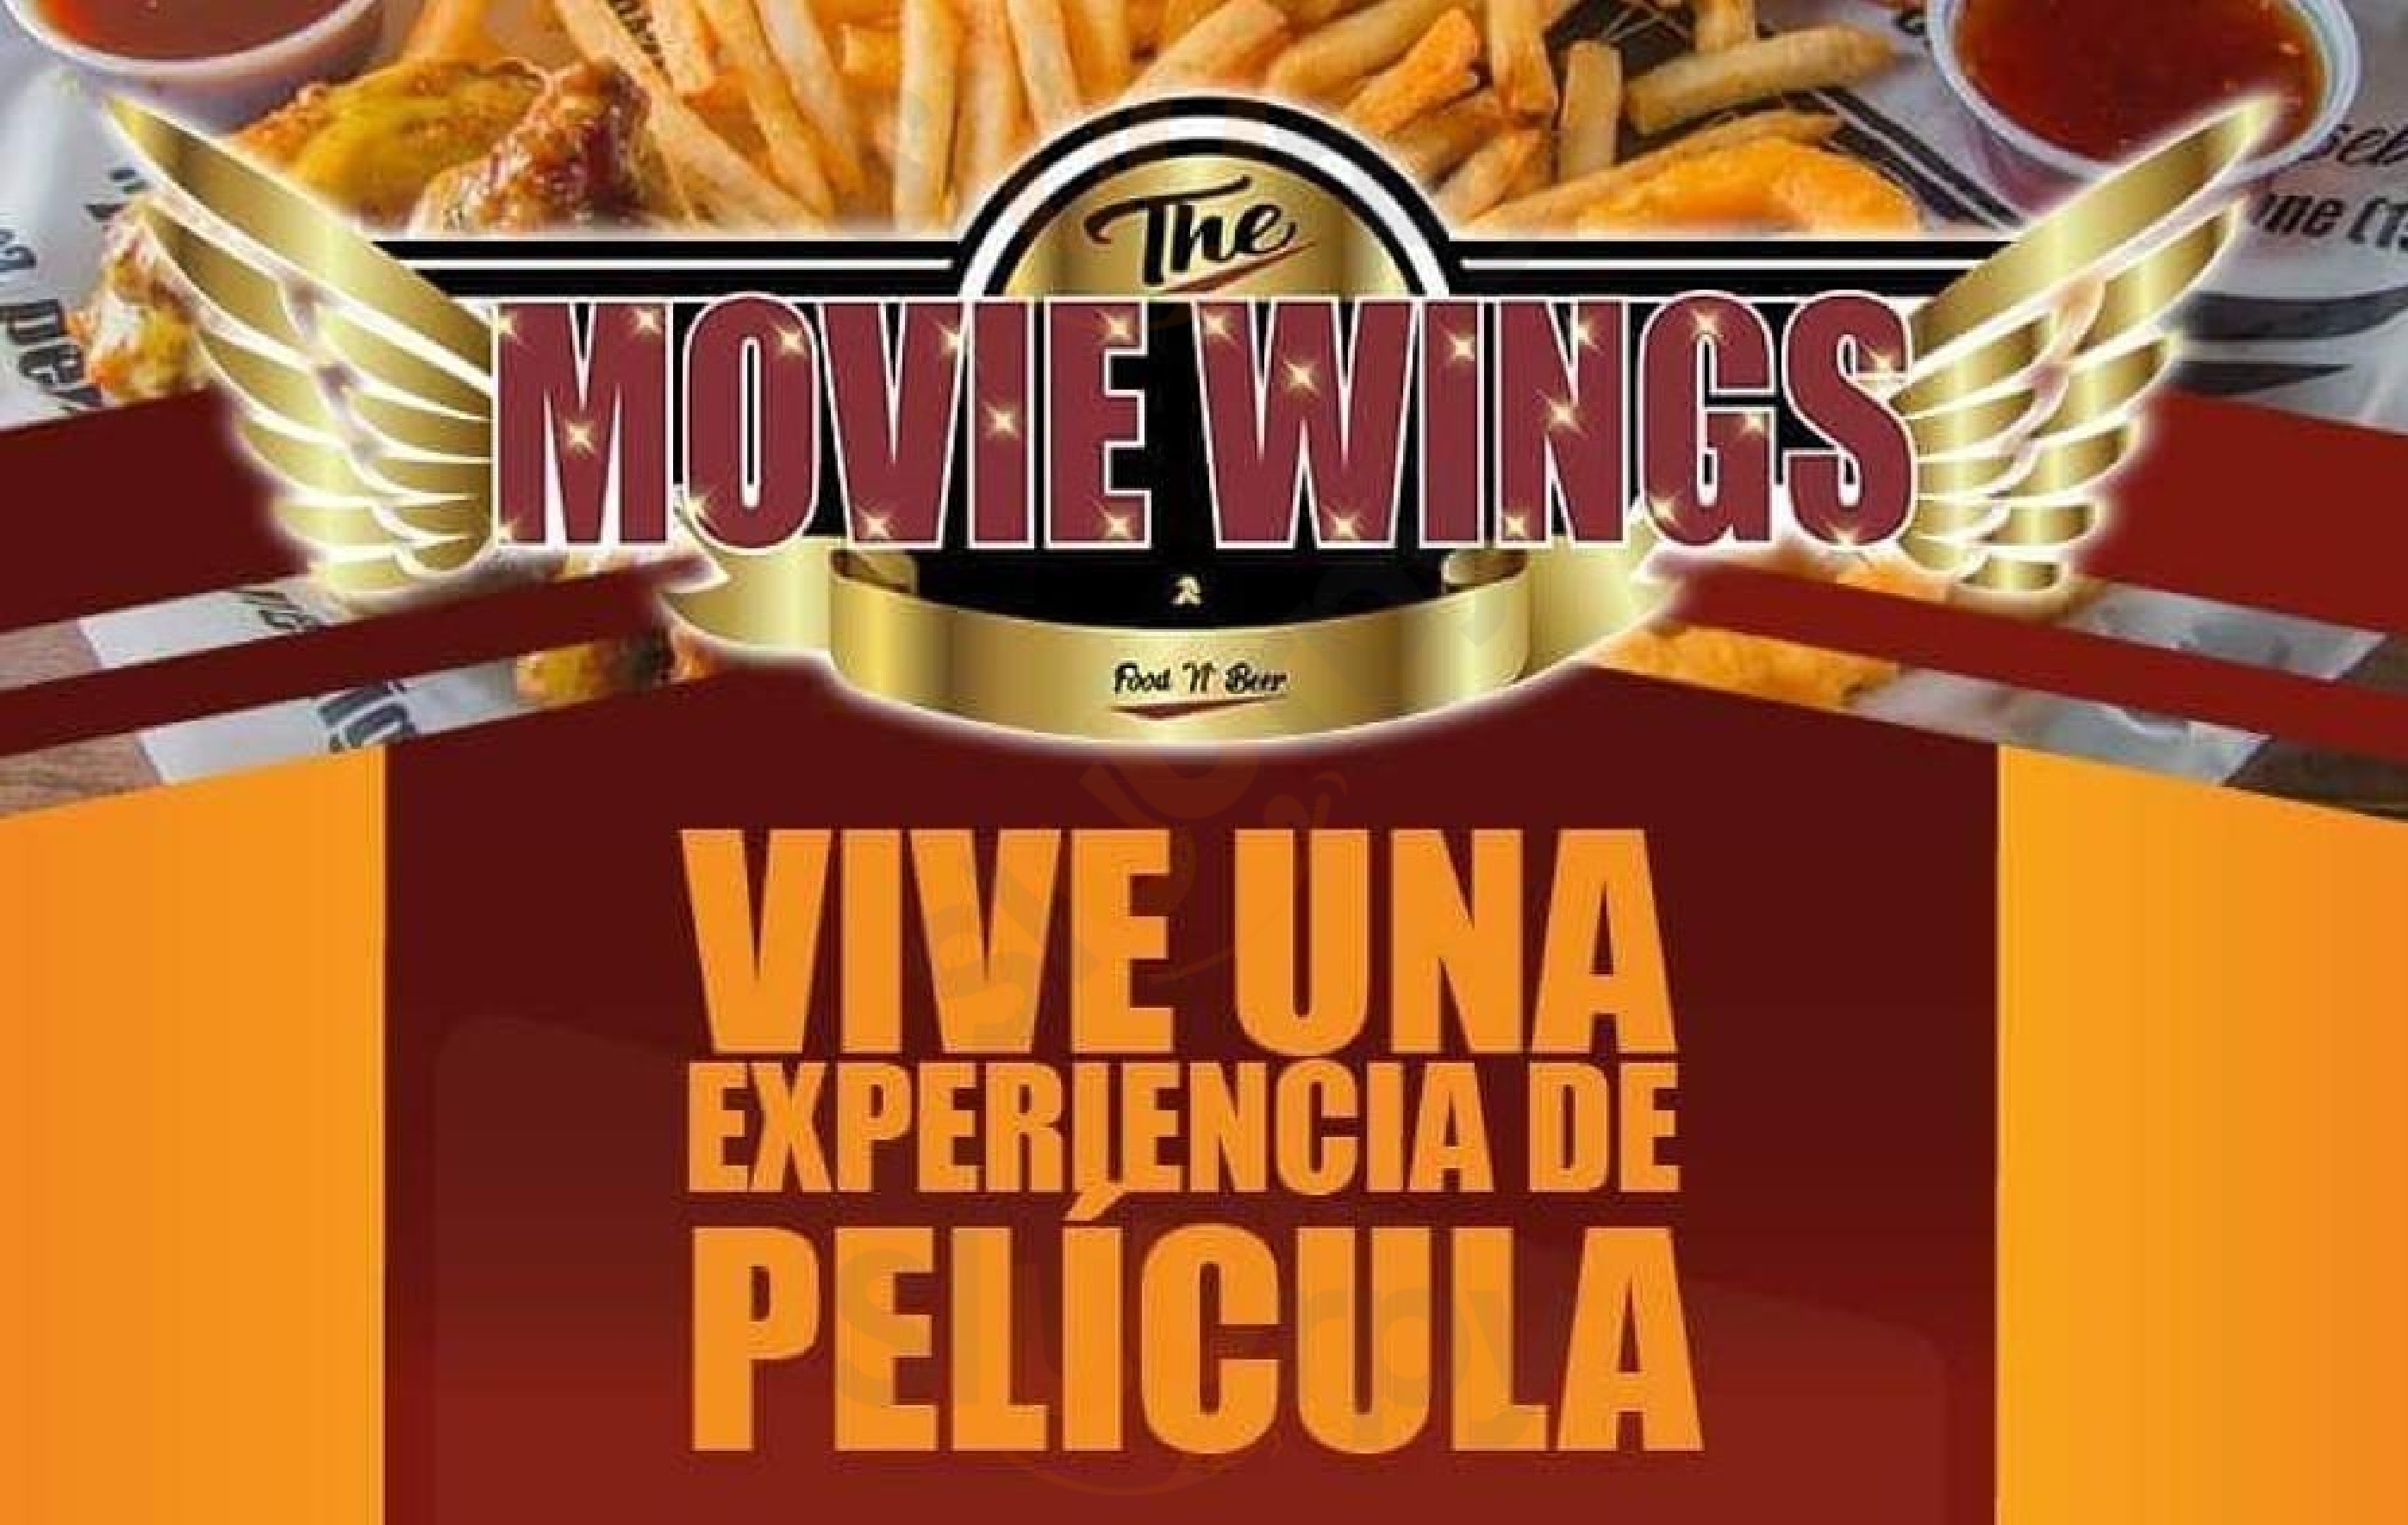 The Movie Wings (alitas & Costillas) Medellín Menu - 1